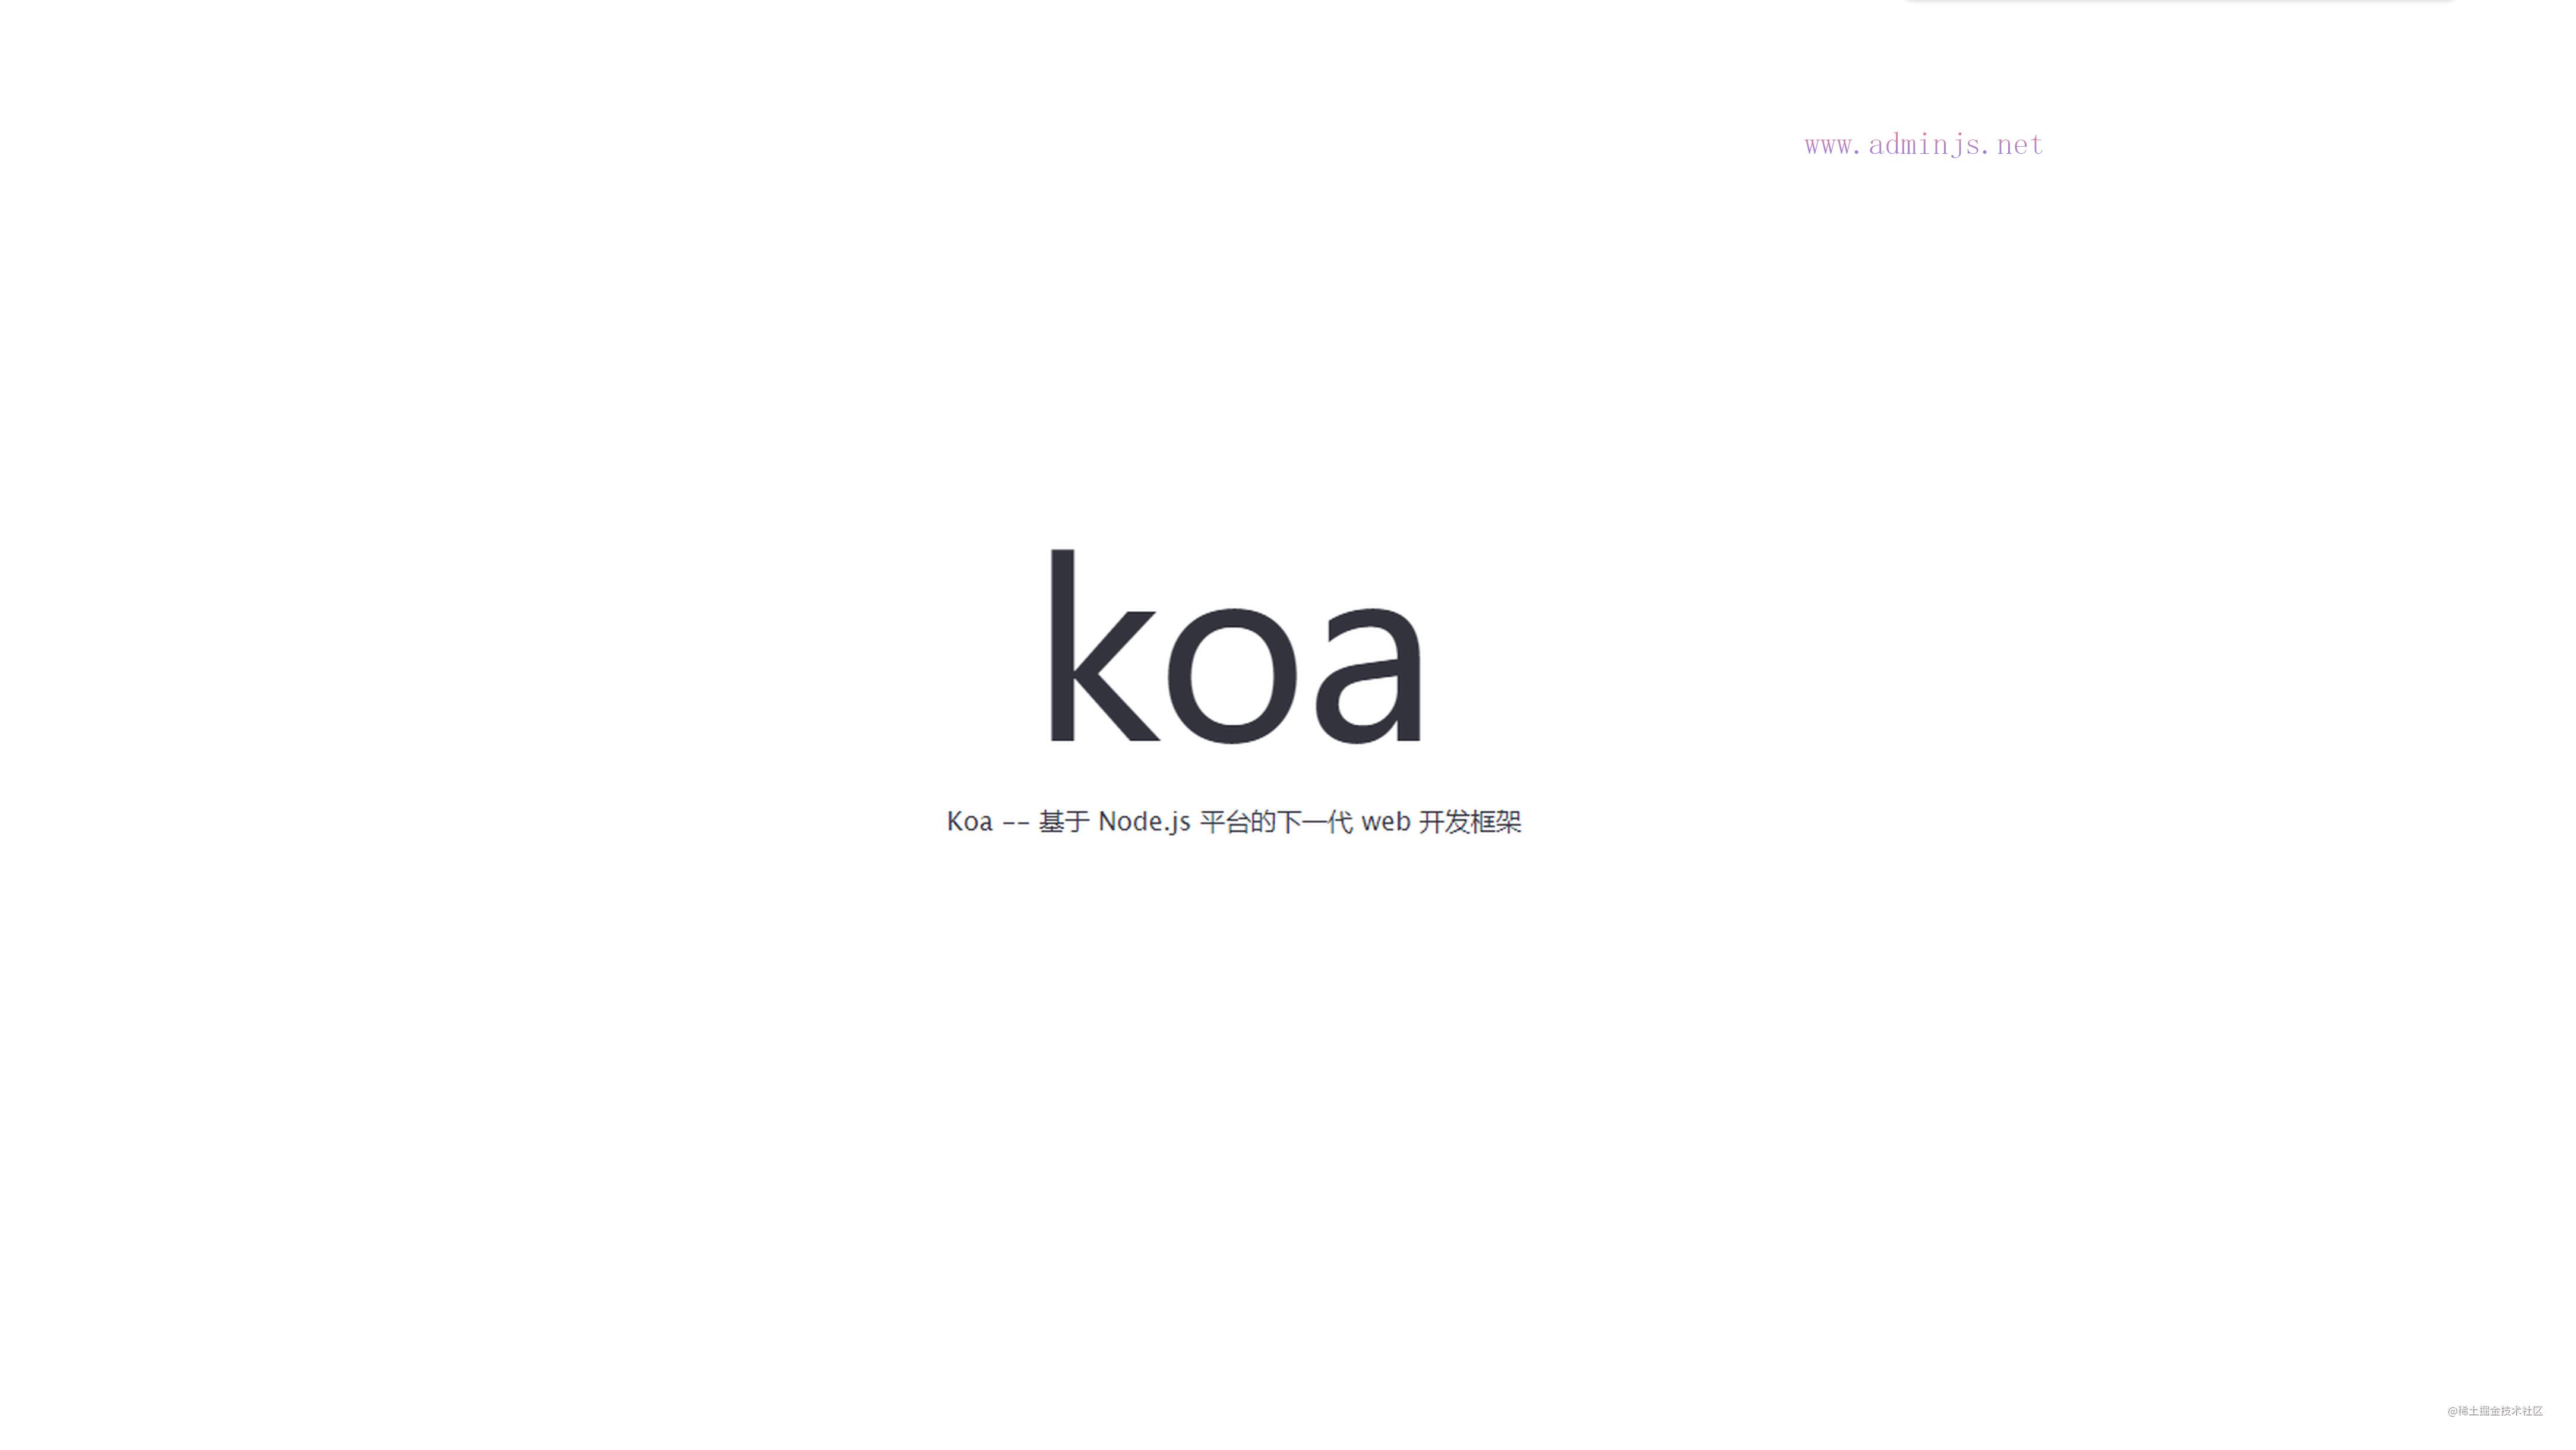 一起来写个node服务，koa框架